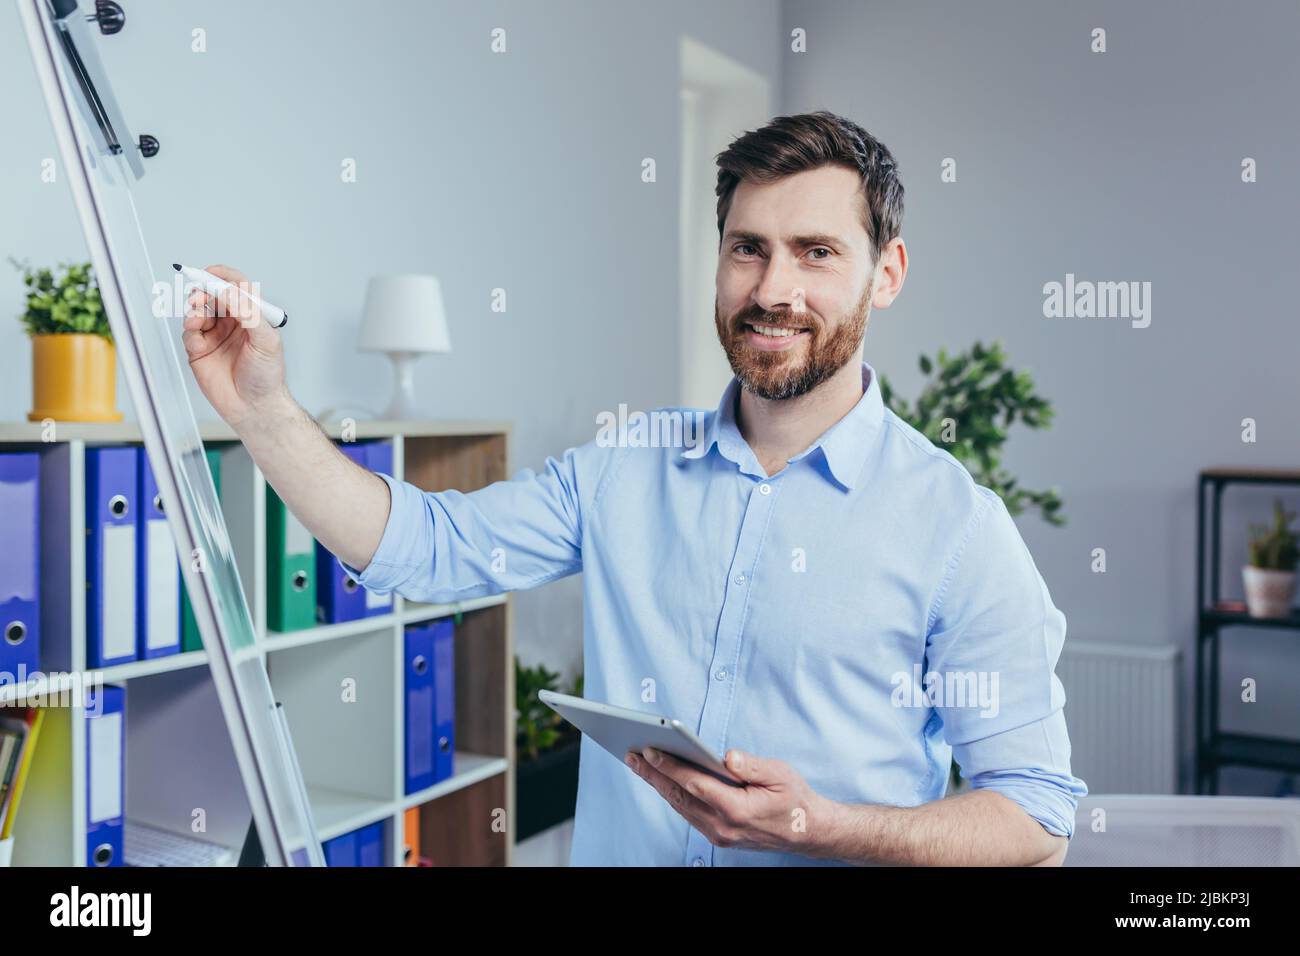 Porträt eines erfolgreichen Unternehmensgründers, ein Mann schaut auf die Kamera und lächelt auf ein Whiteboard für Notizen, hält ein Tablet, beschreibt eine Business str Stockfoto